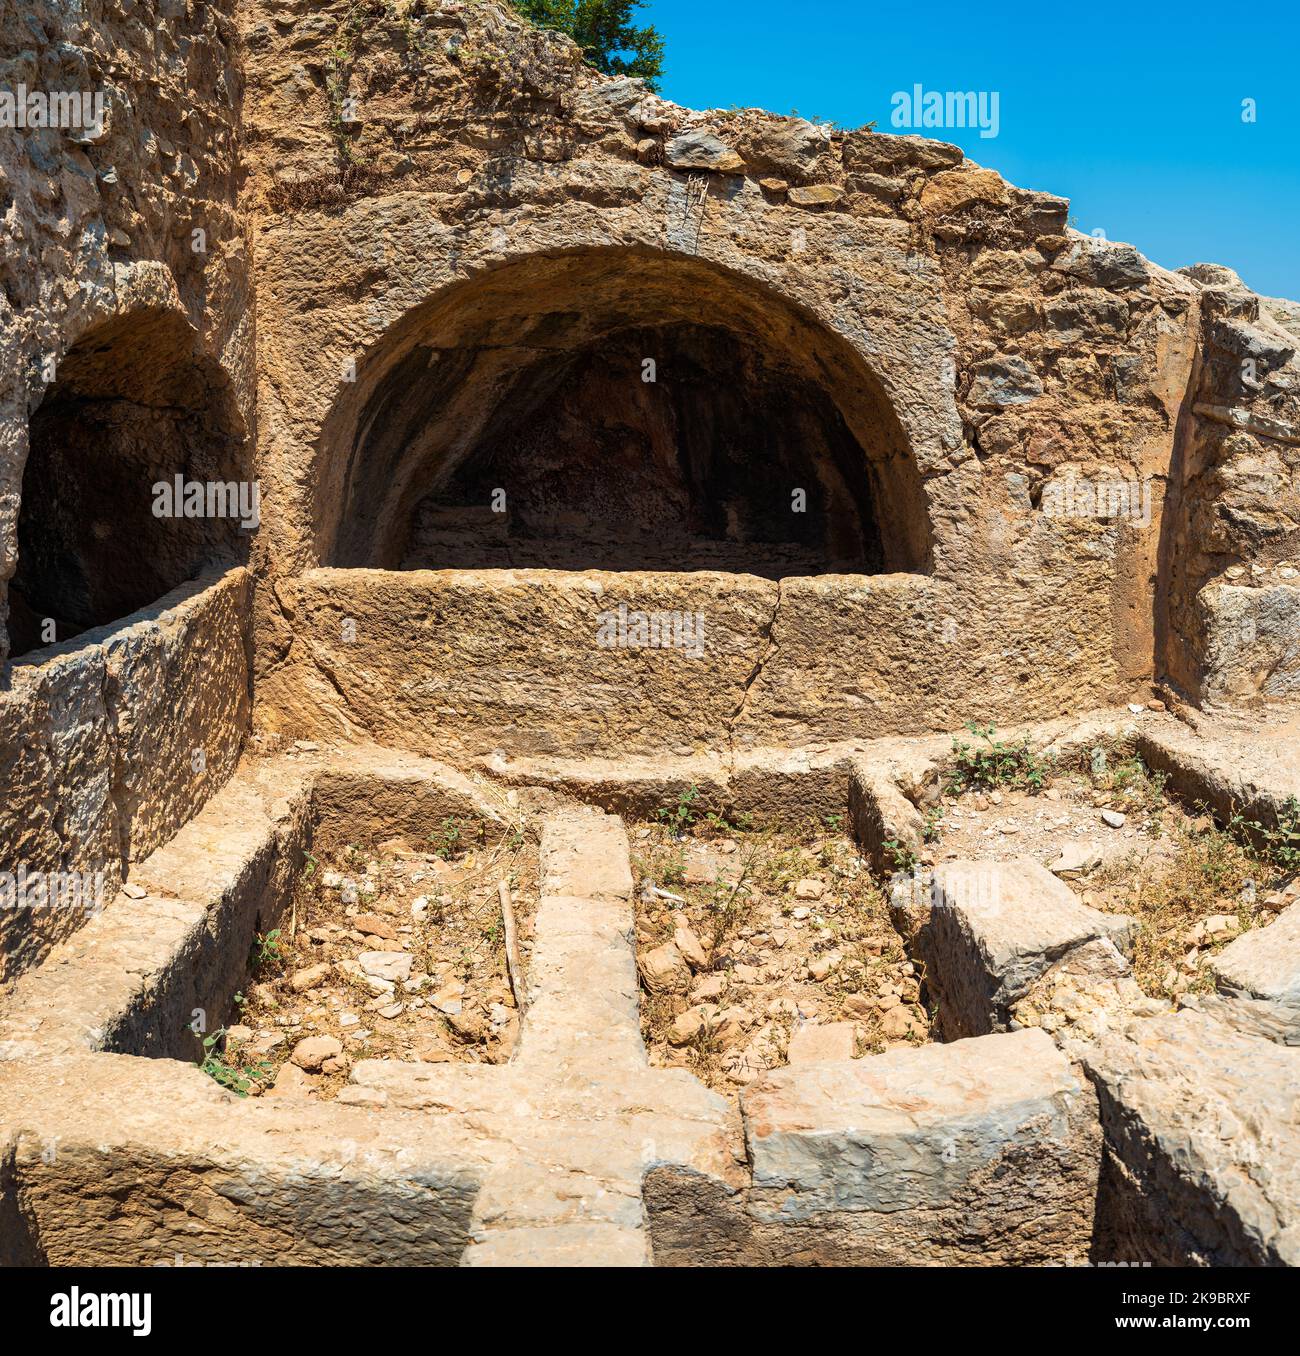 La grotte des sept dormeurs est située sur le mont Pion, près d'Éphèse et est le site de nombreux mythes religieux différents. Selcuk, Izmir, Turquie Banque D'Images